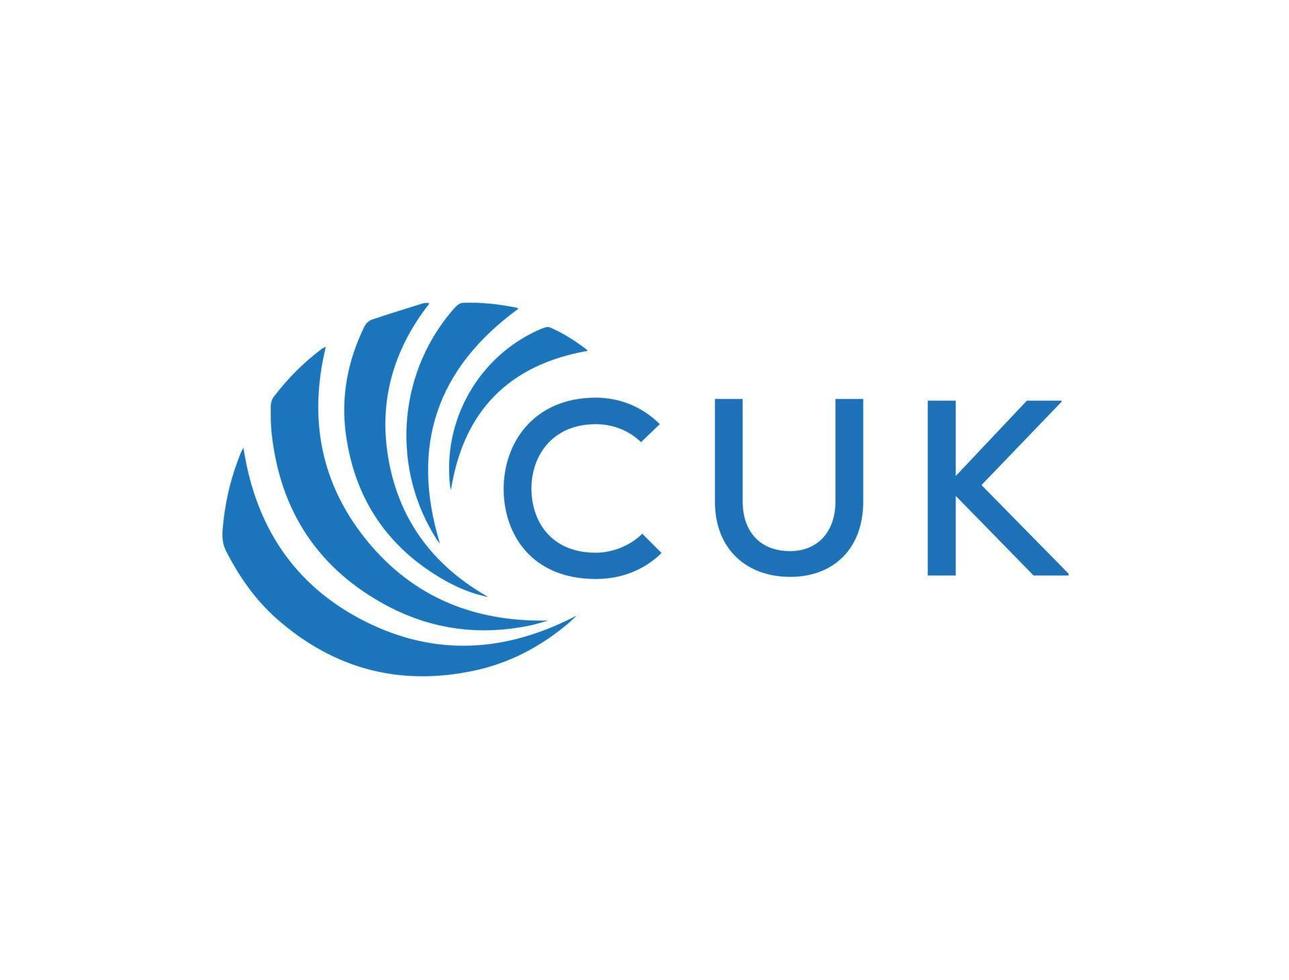 CUK letter logo design on white background. CUK creative circle letter logo concept. CUK letter design. vector